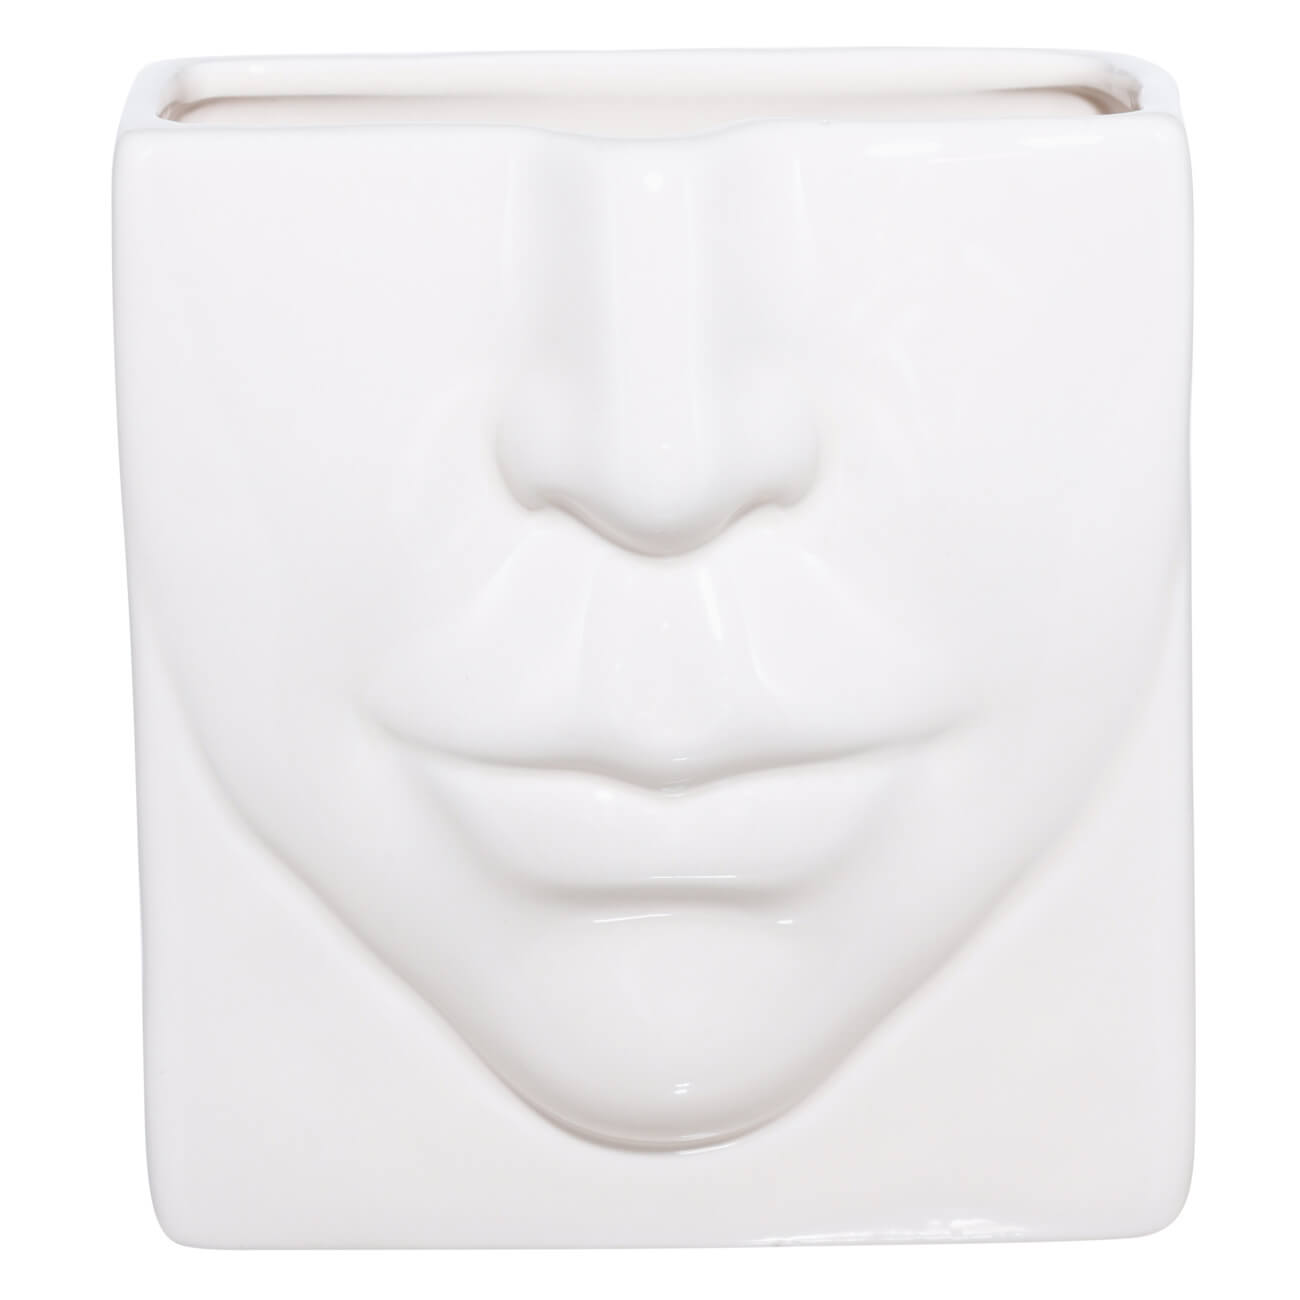 Подставка для косметических кистей, 13х11 см, керамика, молочная, Часть лица, Face подставка деревянная